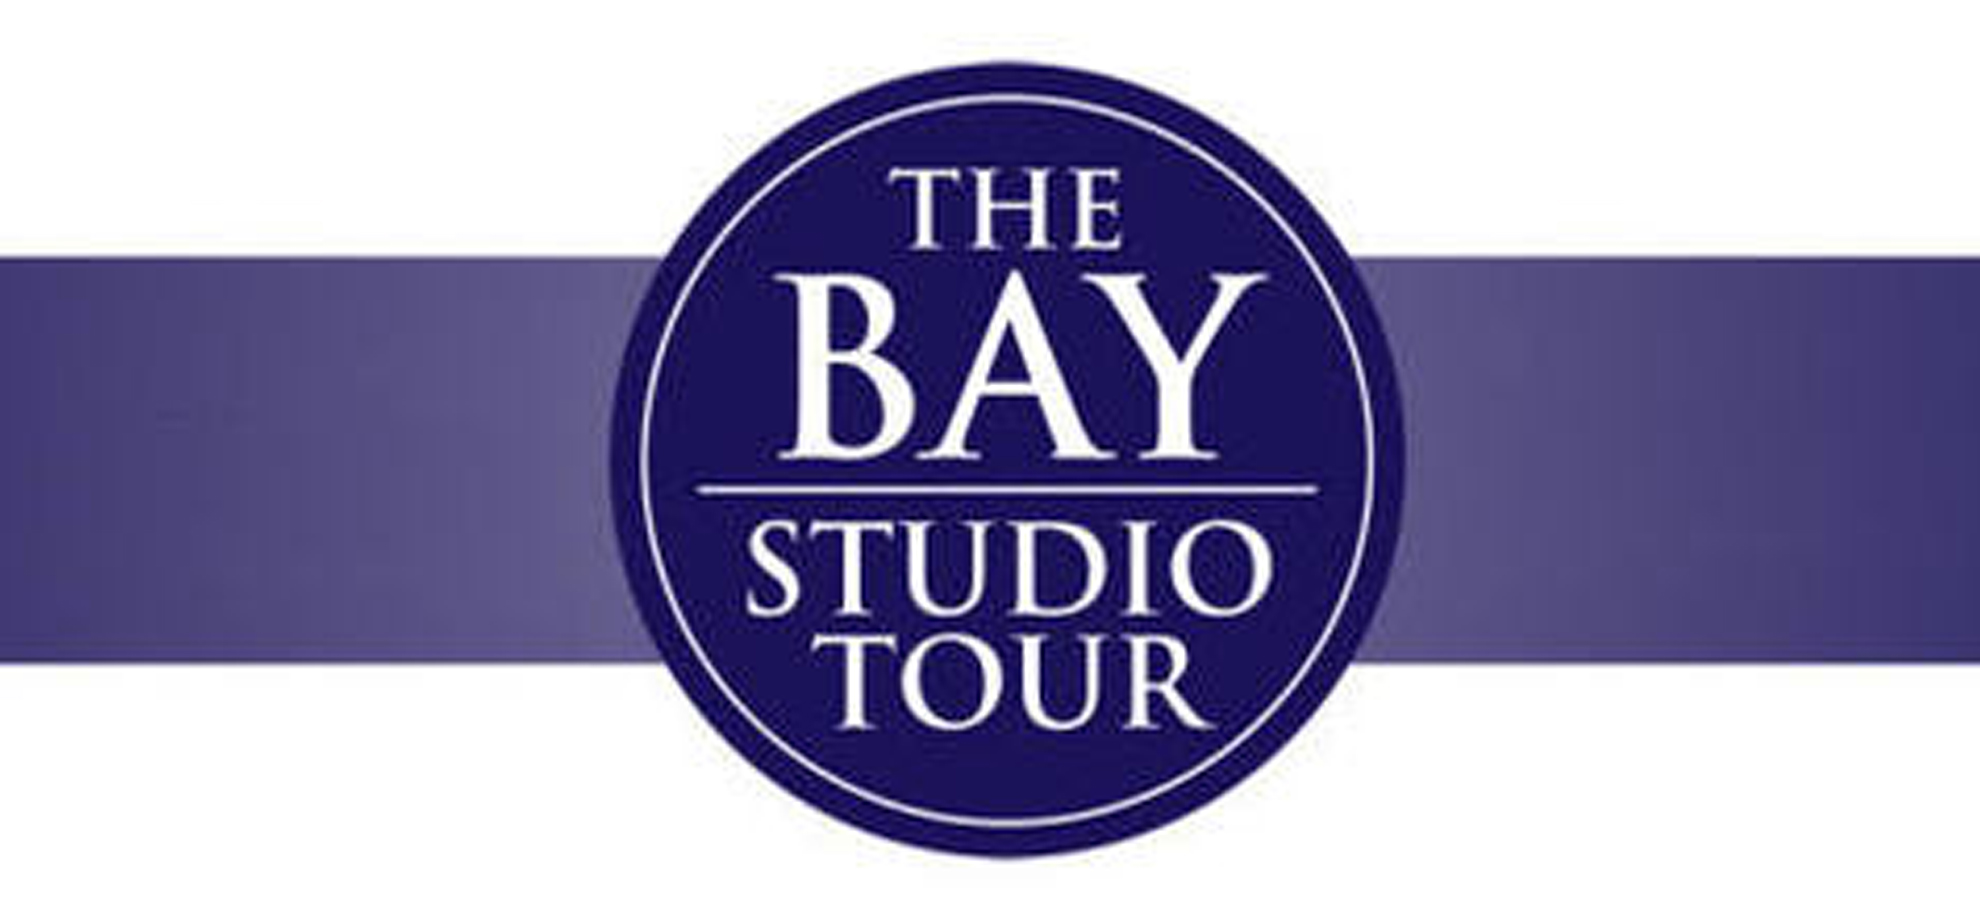 The Bay Studio Tour 2022